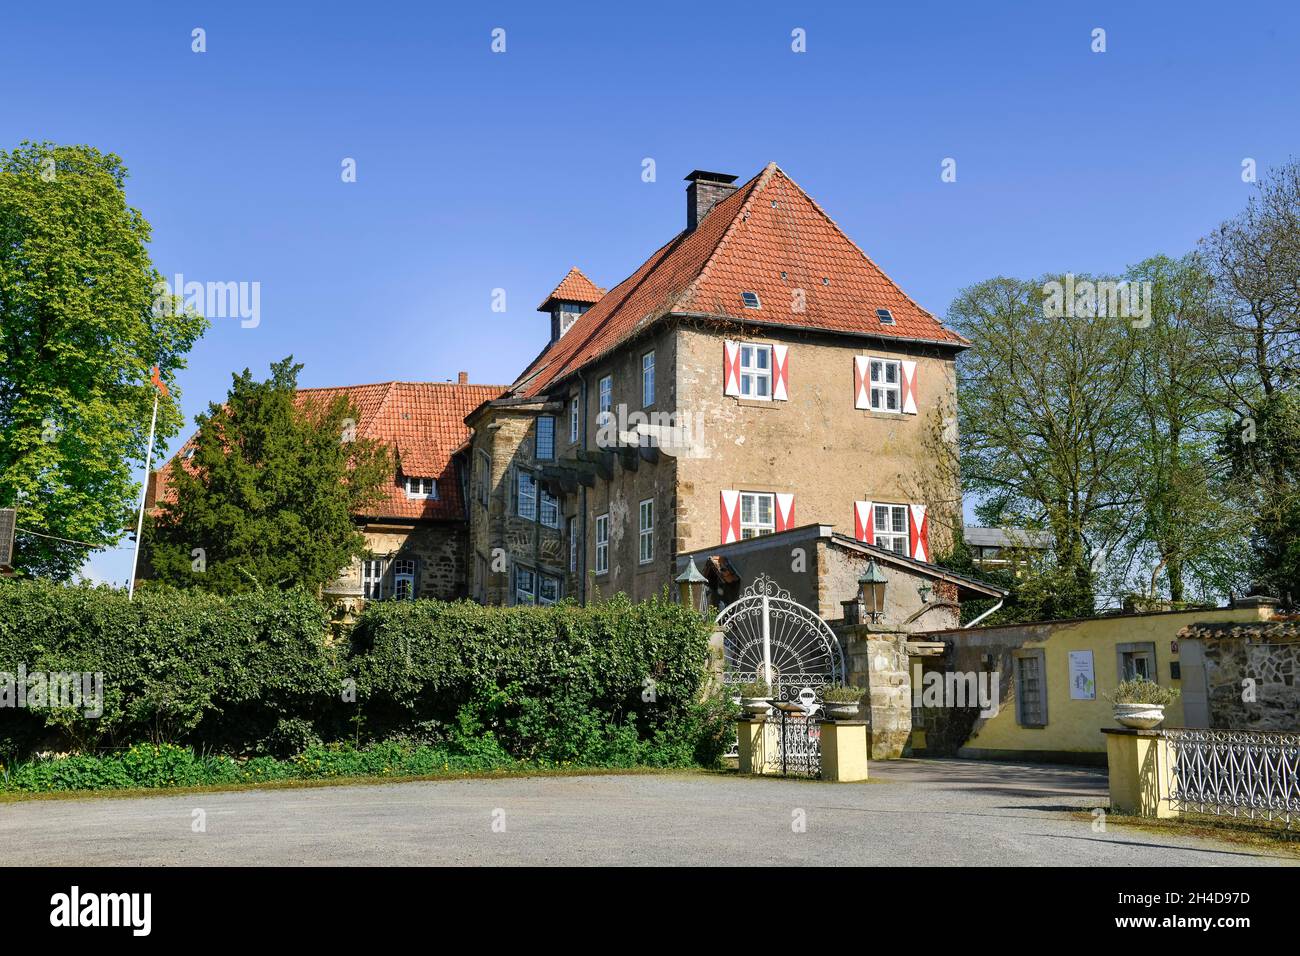 Hotel Schloss, Petershagen, Kreis Minden-Lübbecke, Nordrhein-Westfalen, Deutschland Foto de stock